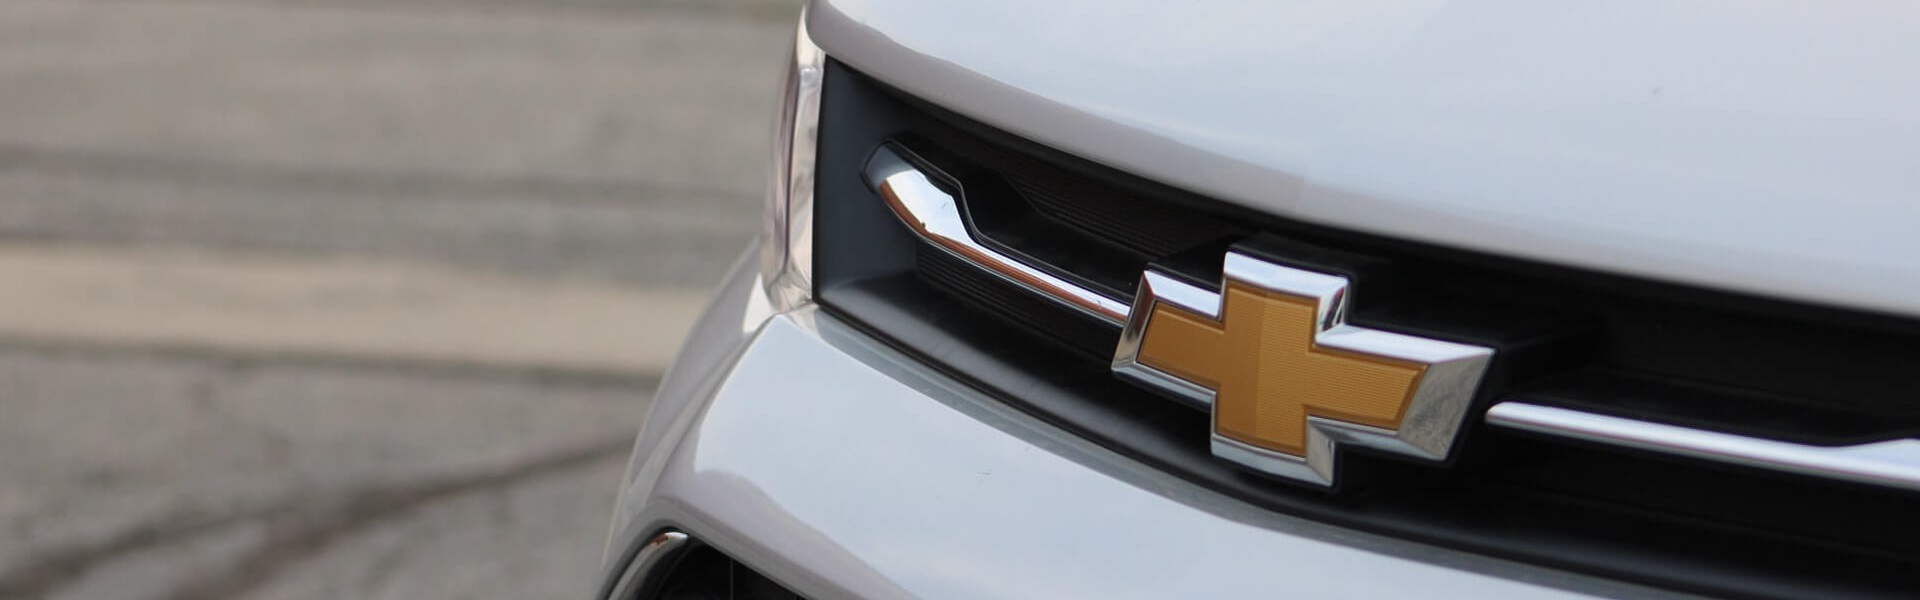 FIAT delovi | Daewoo i Chevrolet delovi